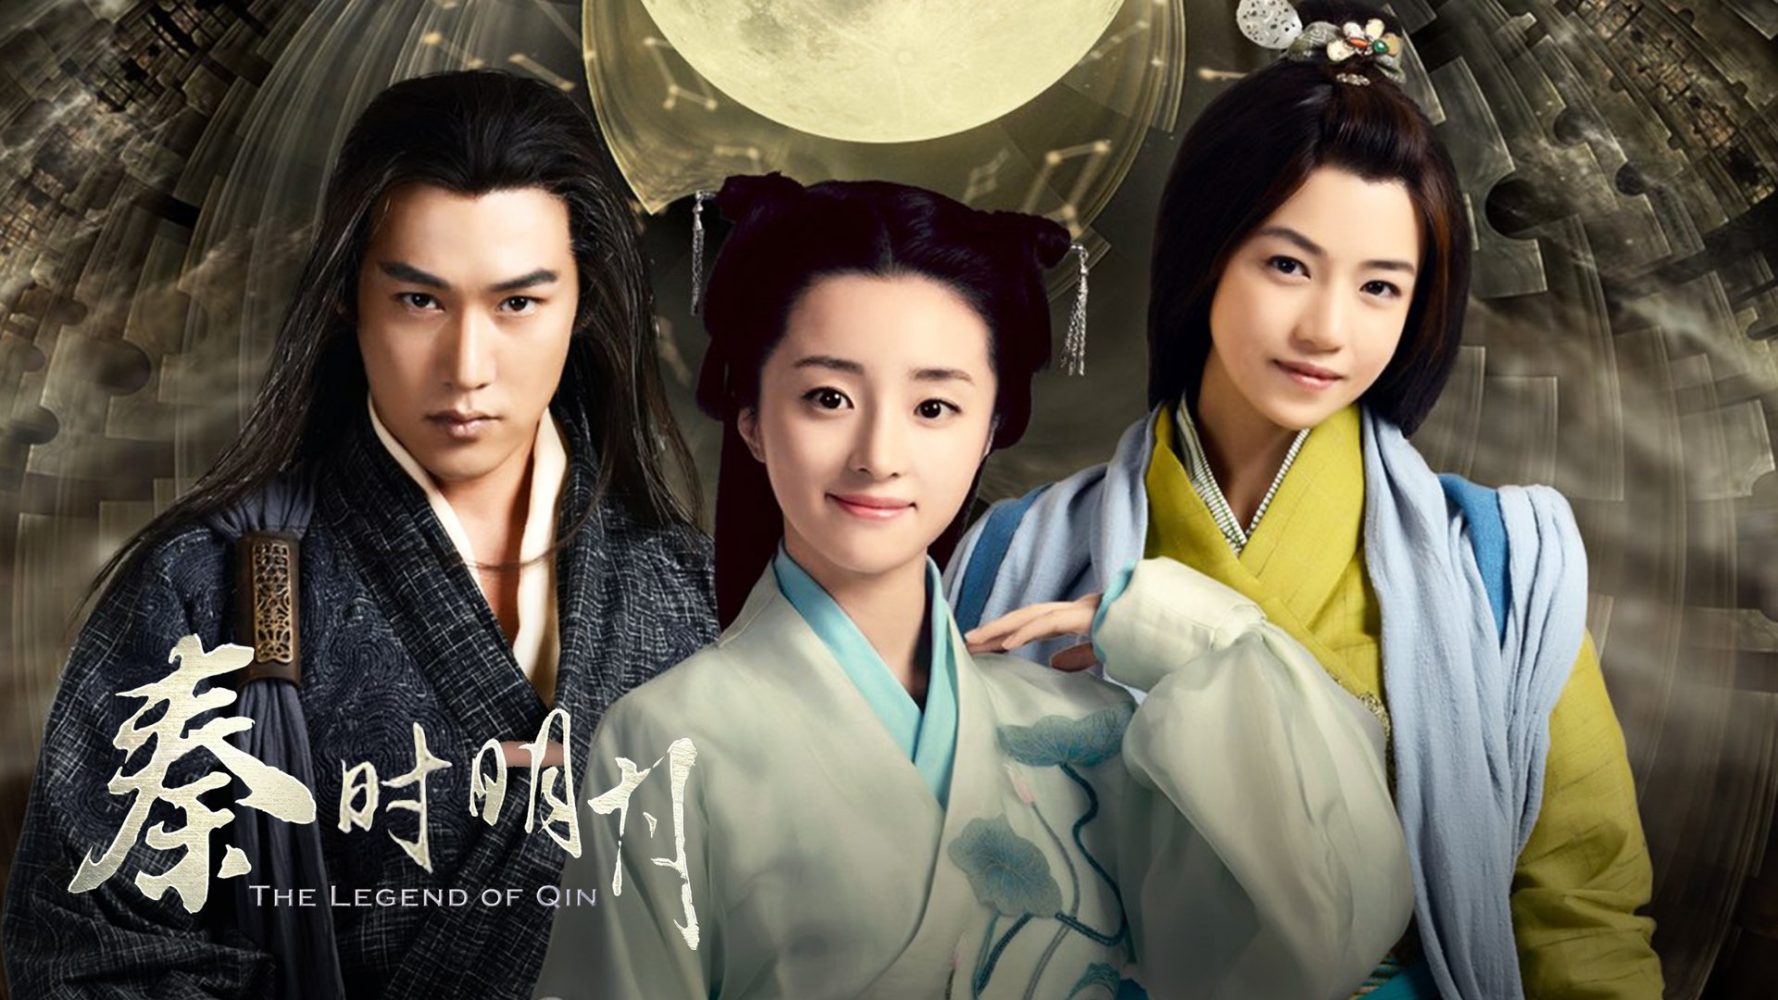 Hồ Băng Khanh phim Tần thời Minh Nguyệt - The Legend of Qin (2015)